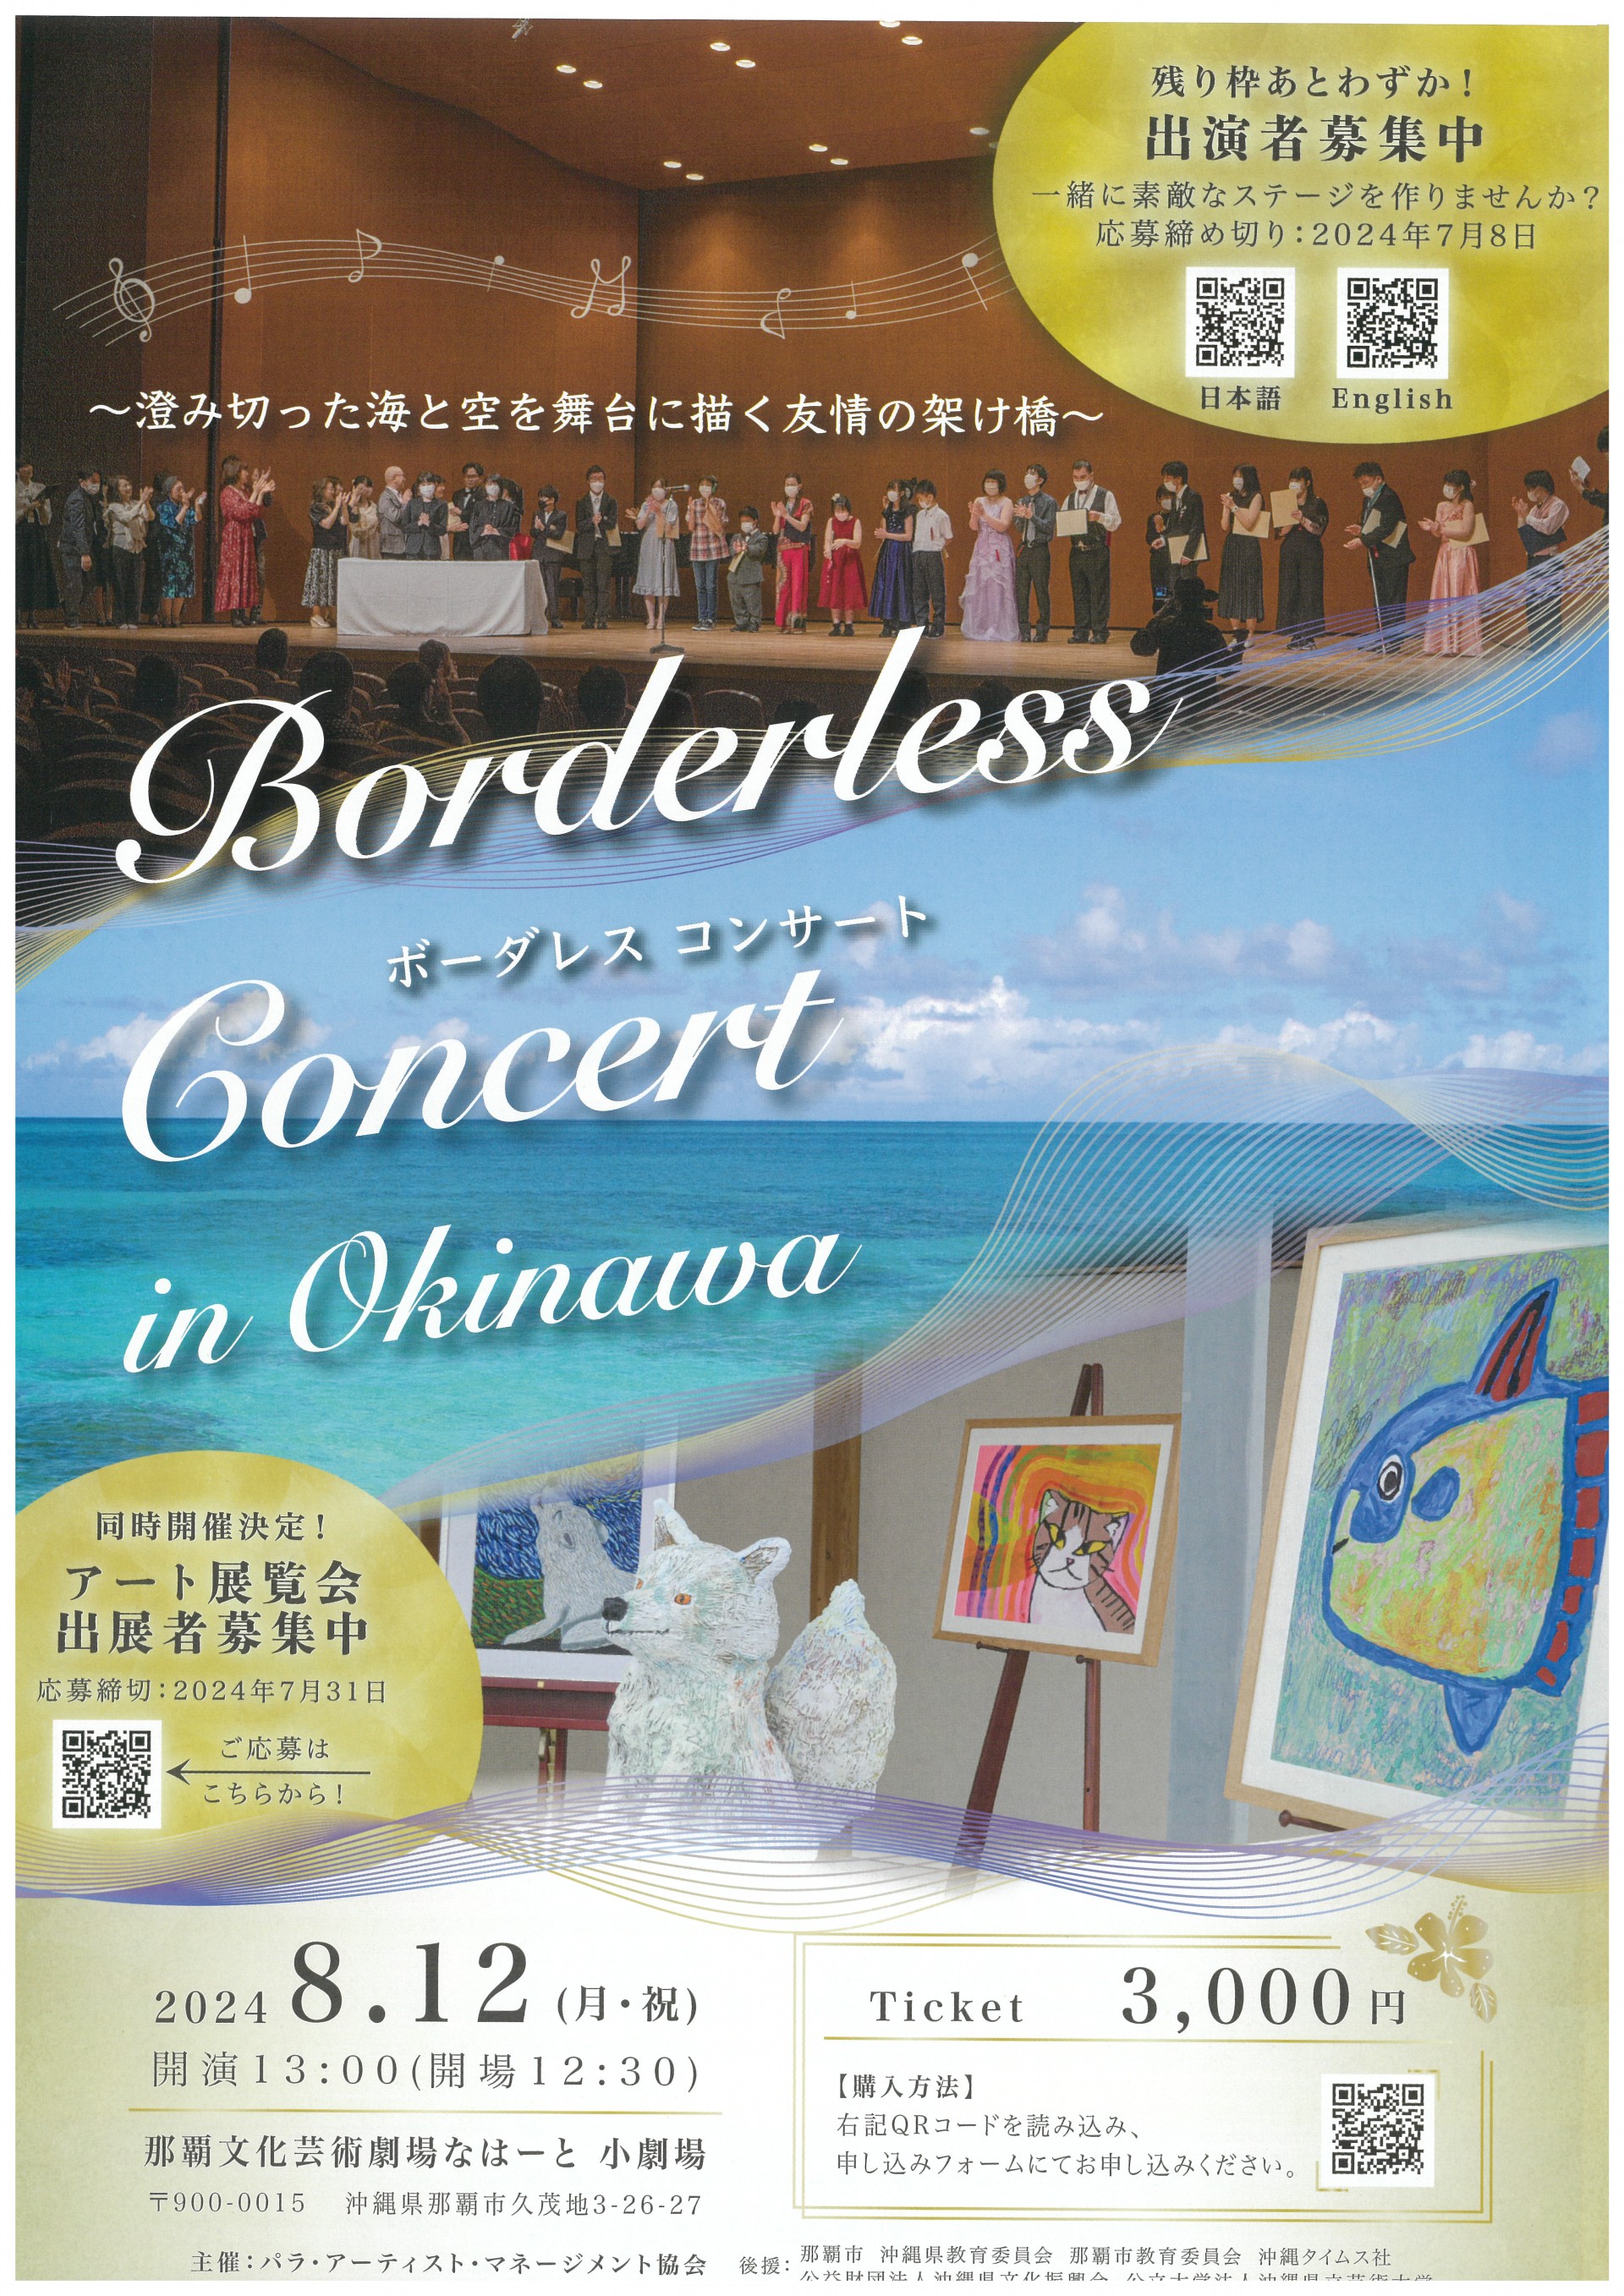 ボーダレス・コンサート in 沖縄